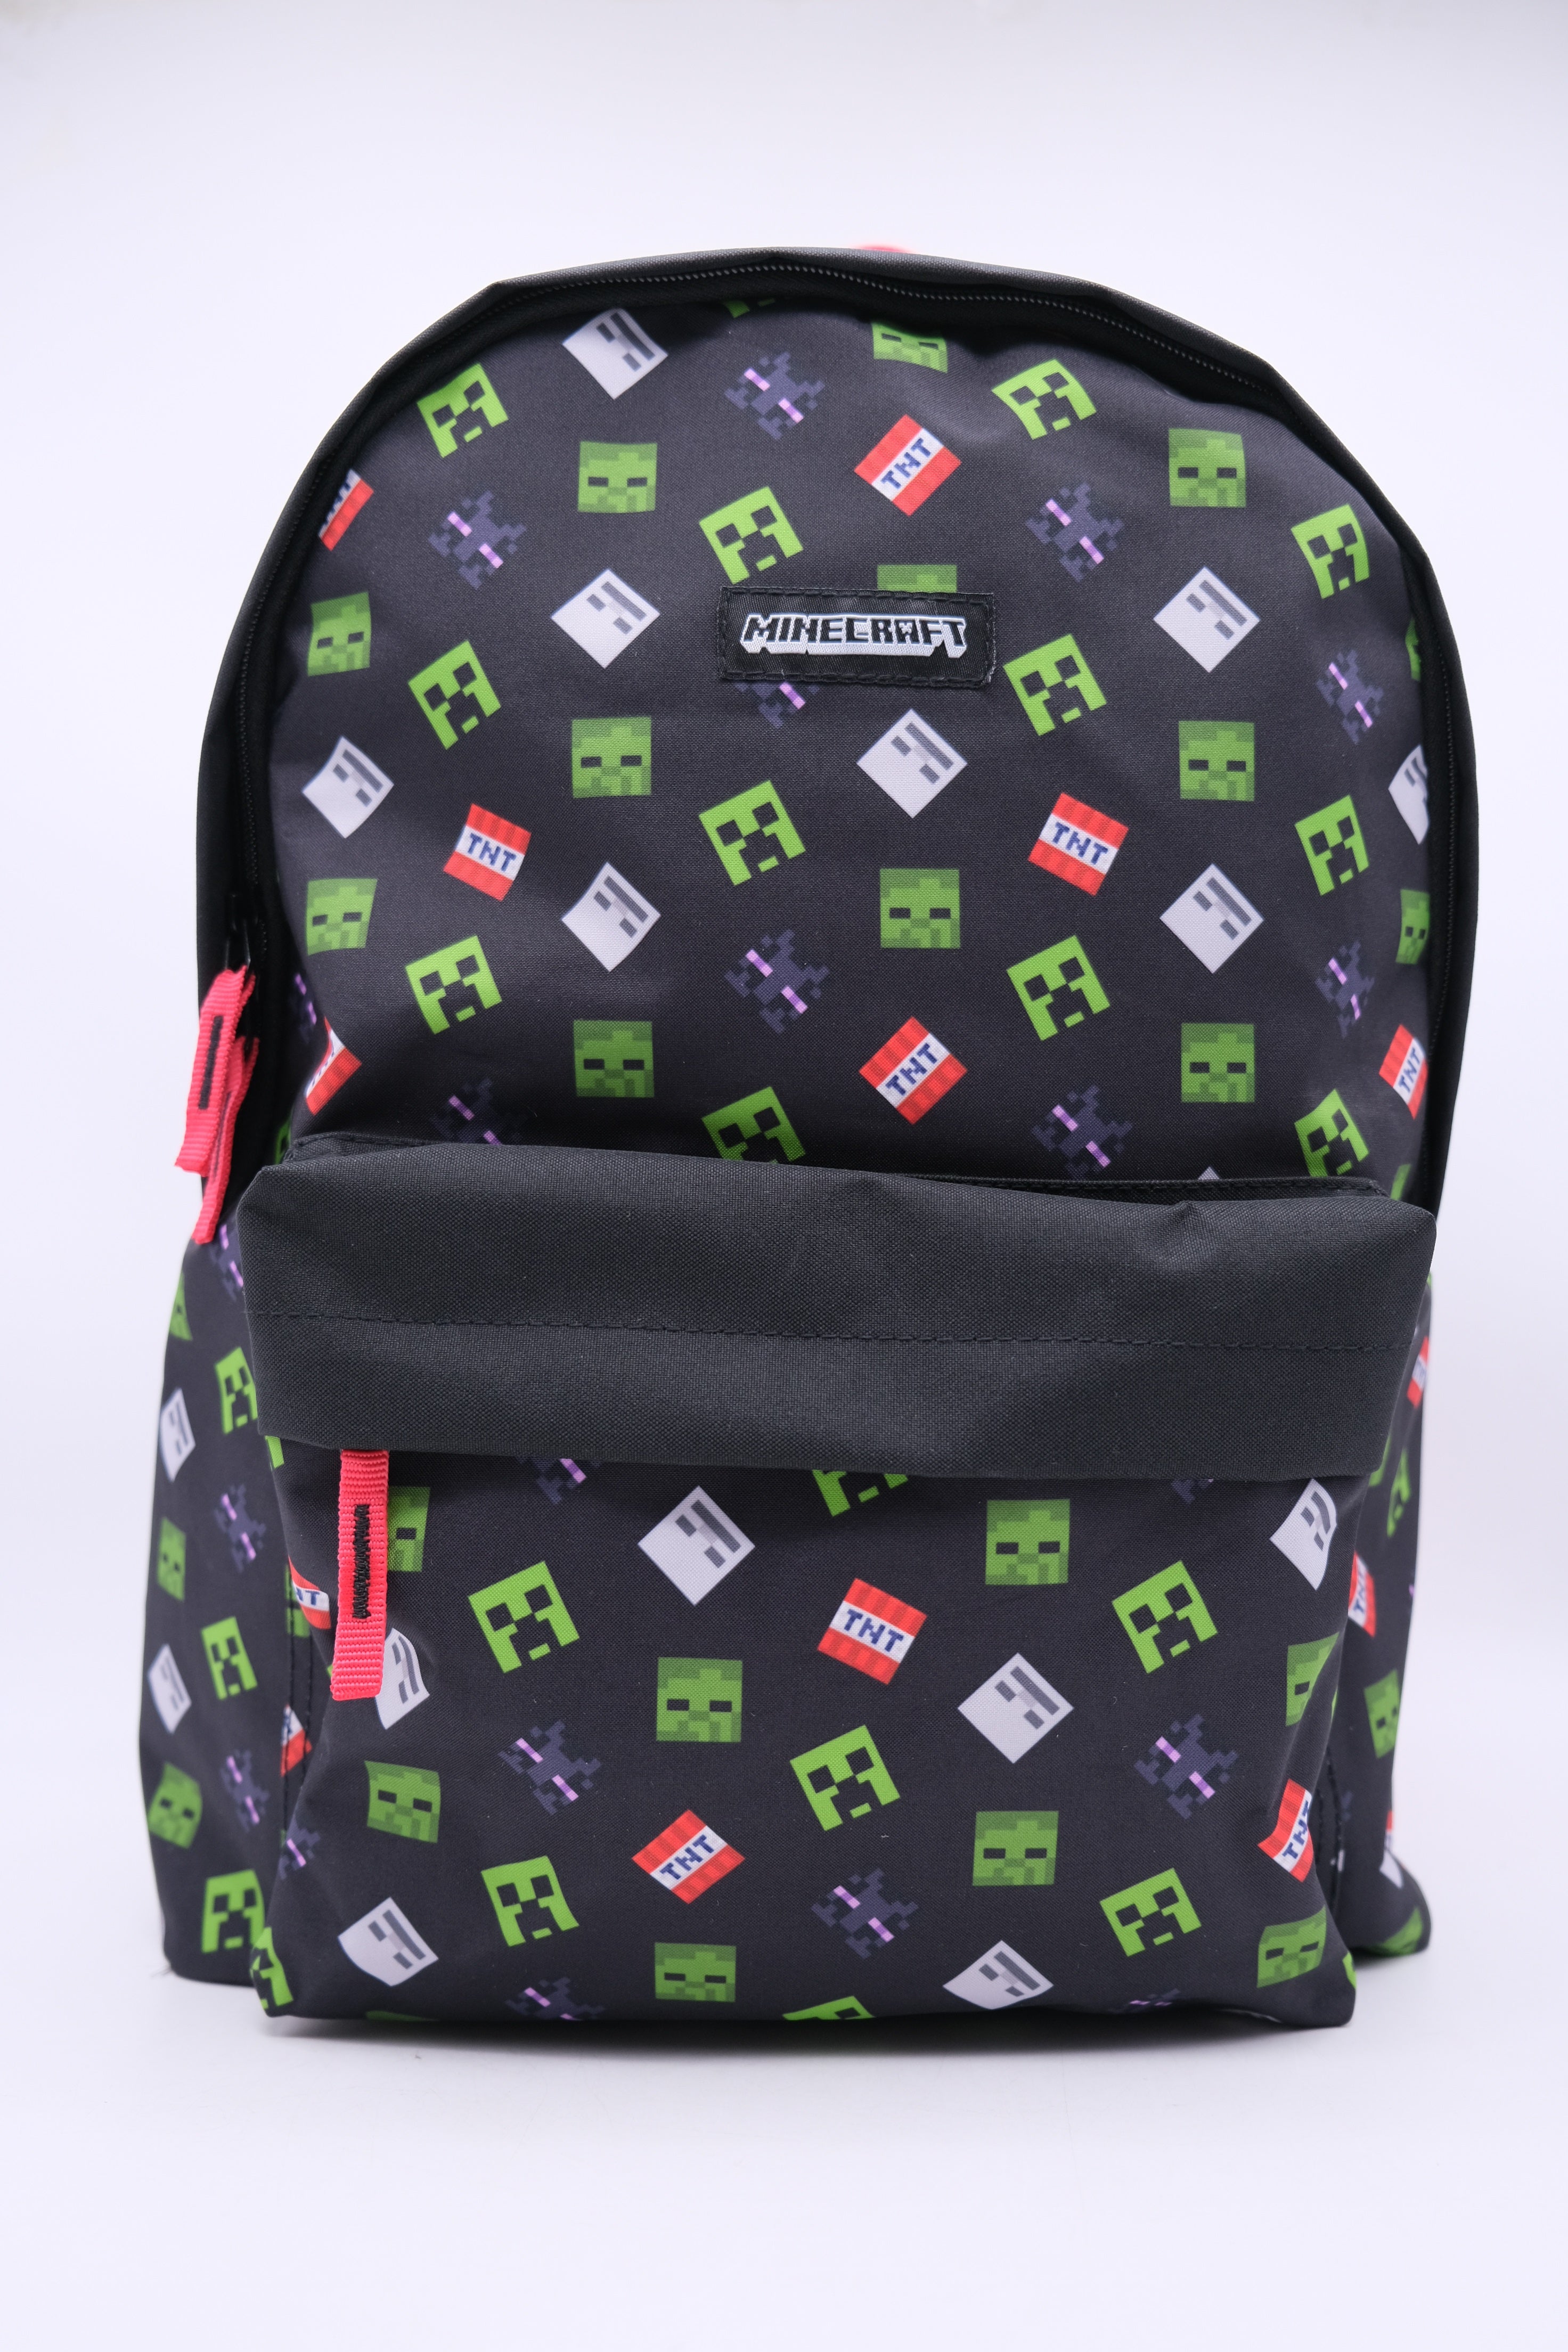 Euromic - Schoolbag (17L)  - Minecraft (0616090-237937117)